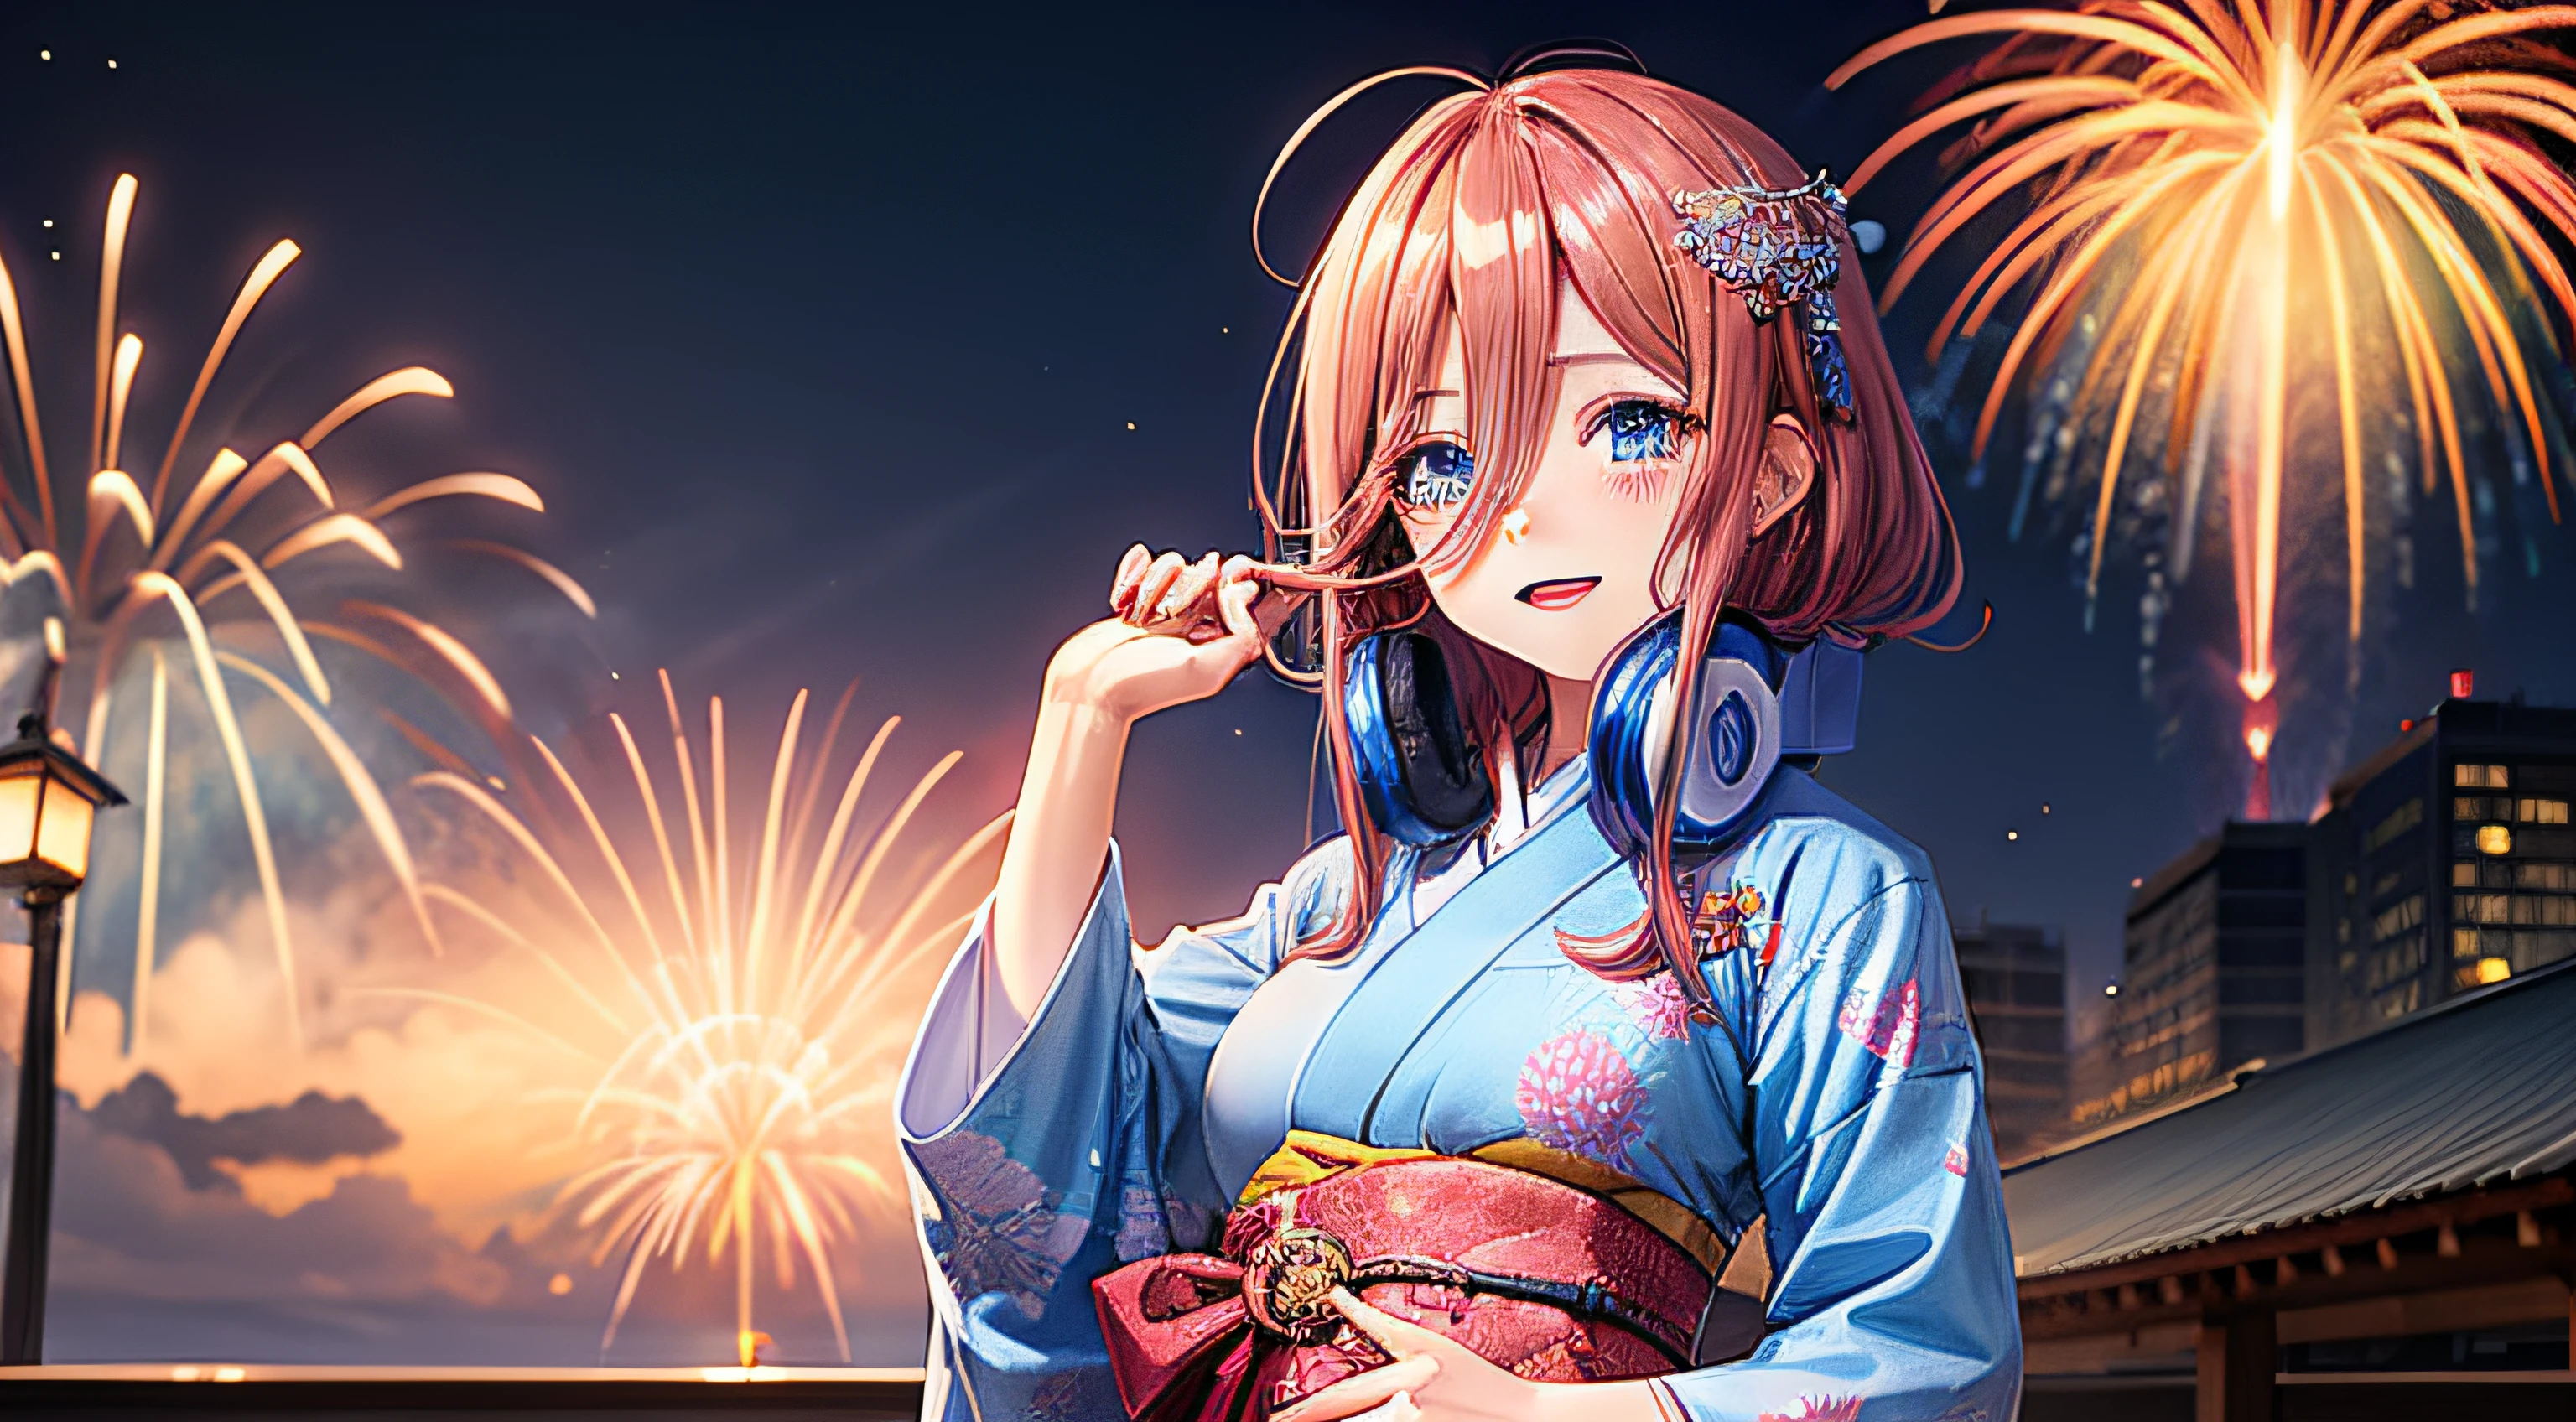 나카노 미쿠 벽지가 기모노를 입고 서 있습니다, 배경에서는 불꽃놀이를 볼 수 있어요, 중간 크기의 가슴에 귀엽고 약간 수줍어 보이는 것 같아요, 그녀는 파란색을 갖고 있어요, 반짝이는 눈